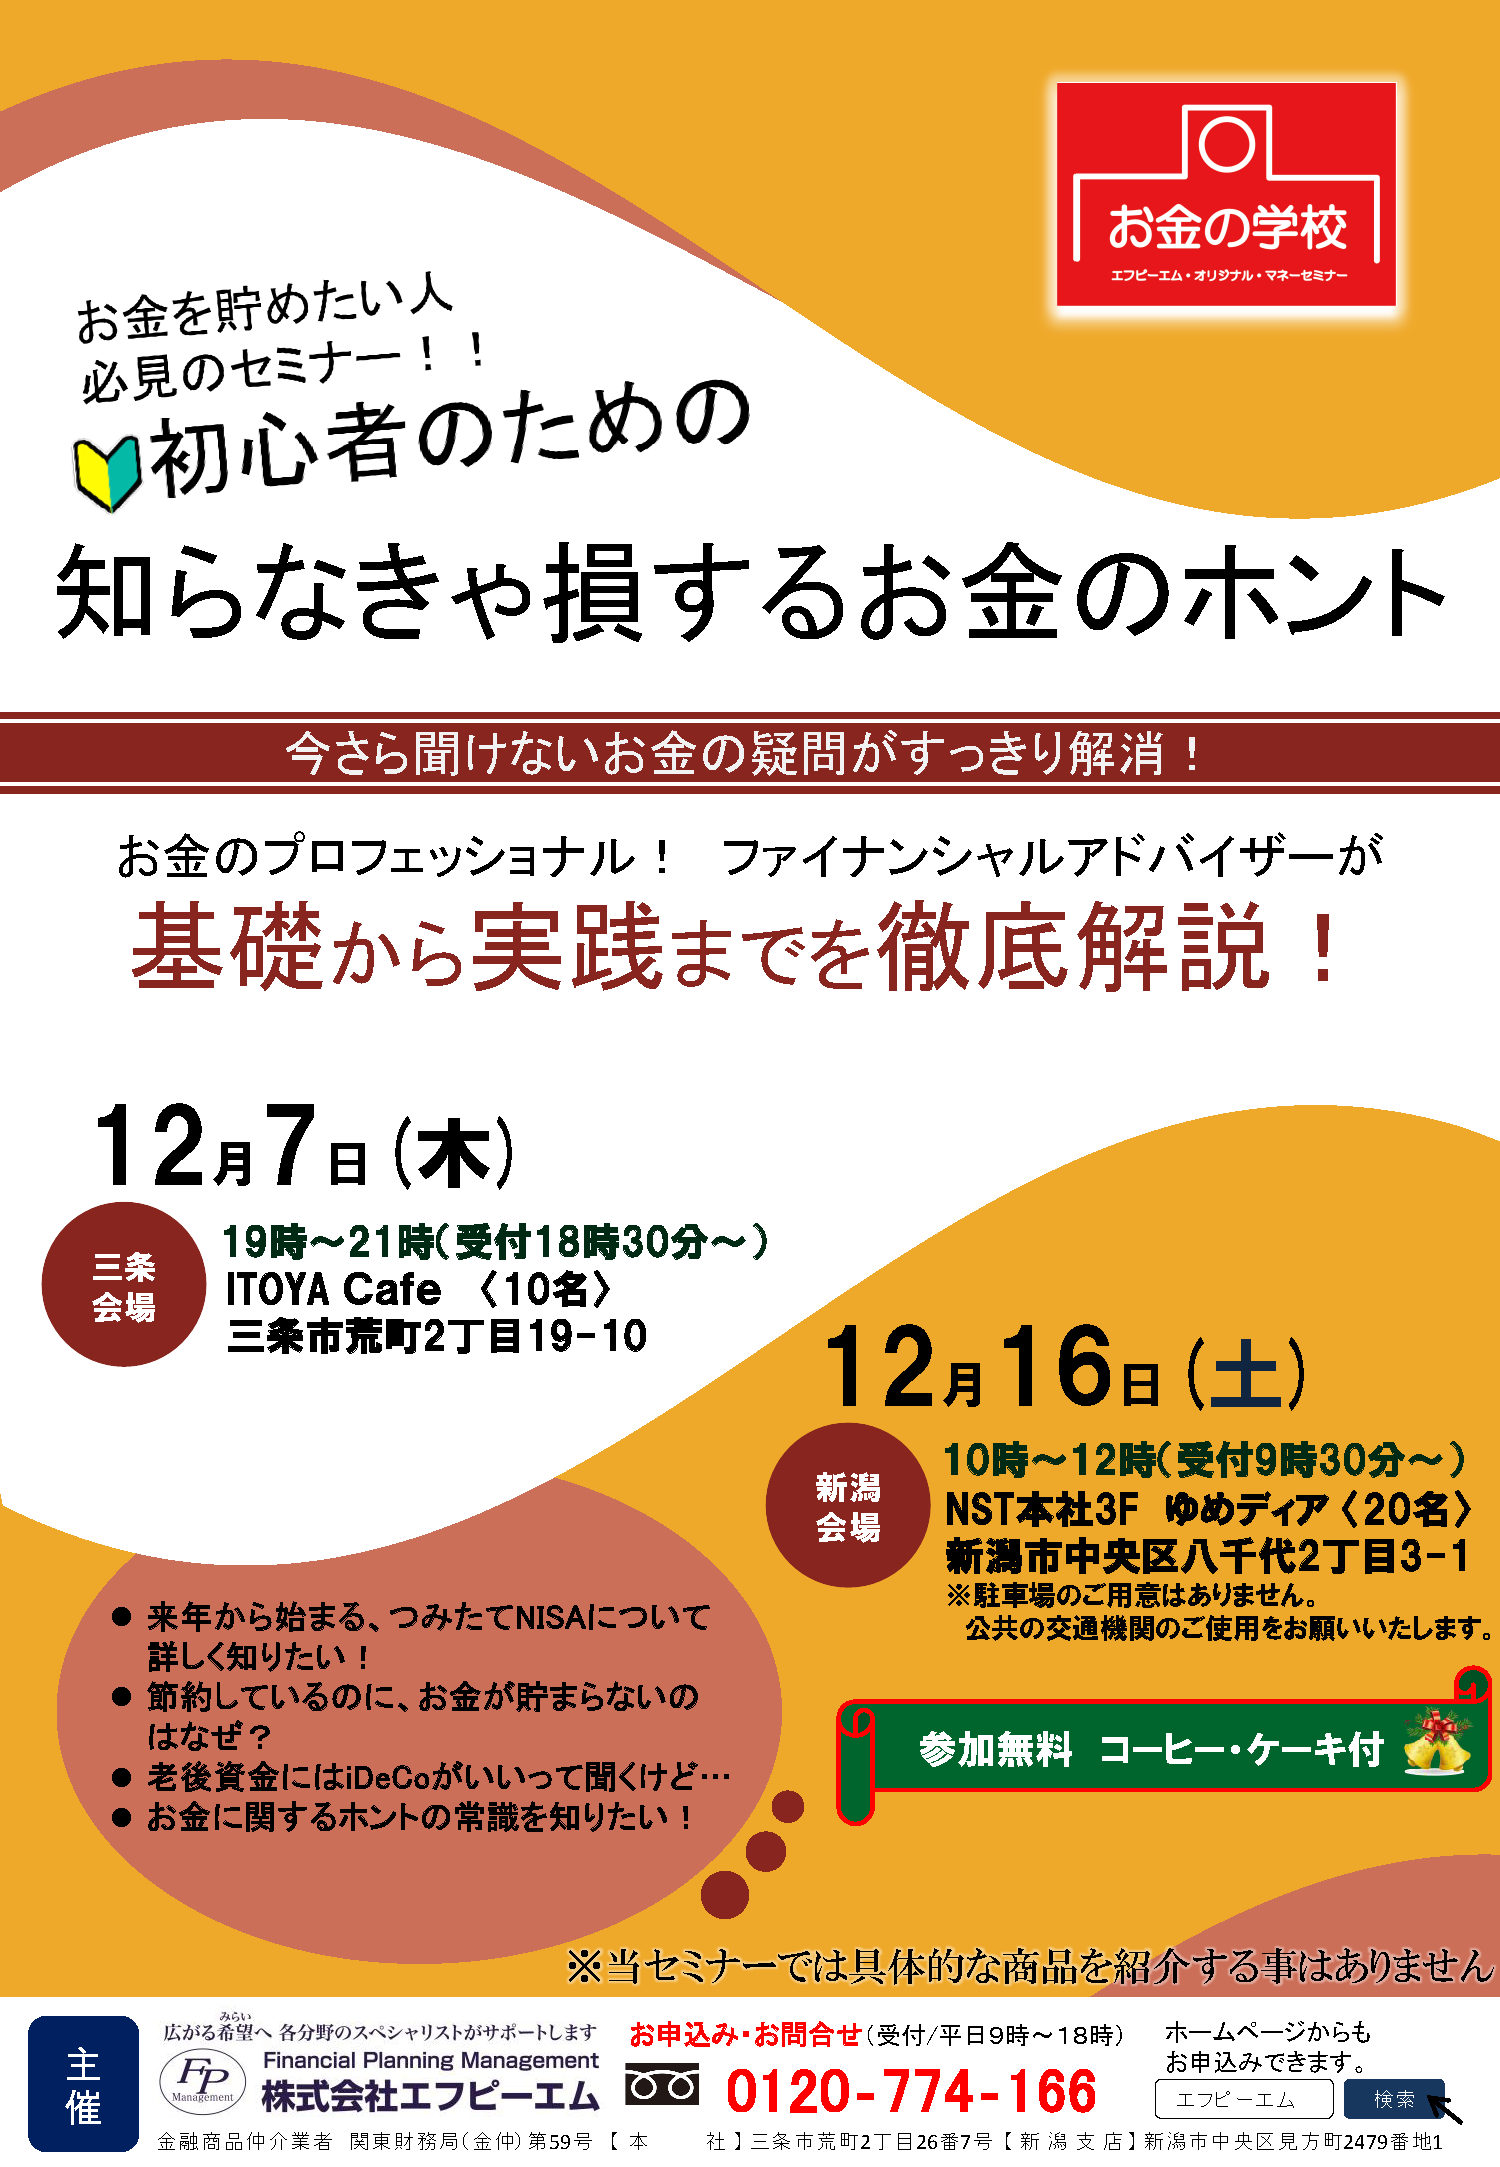 12月7日三条 12月16日新潟開催 初心者のためのマネーセミナー 株式会社エフピーエム